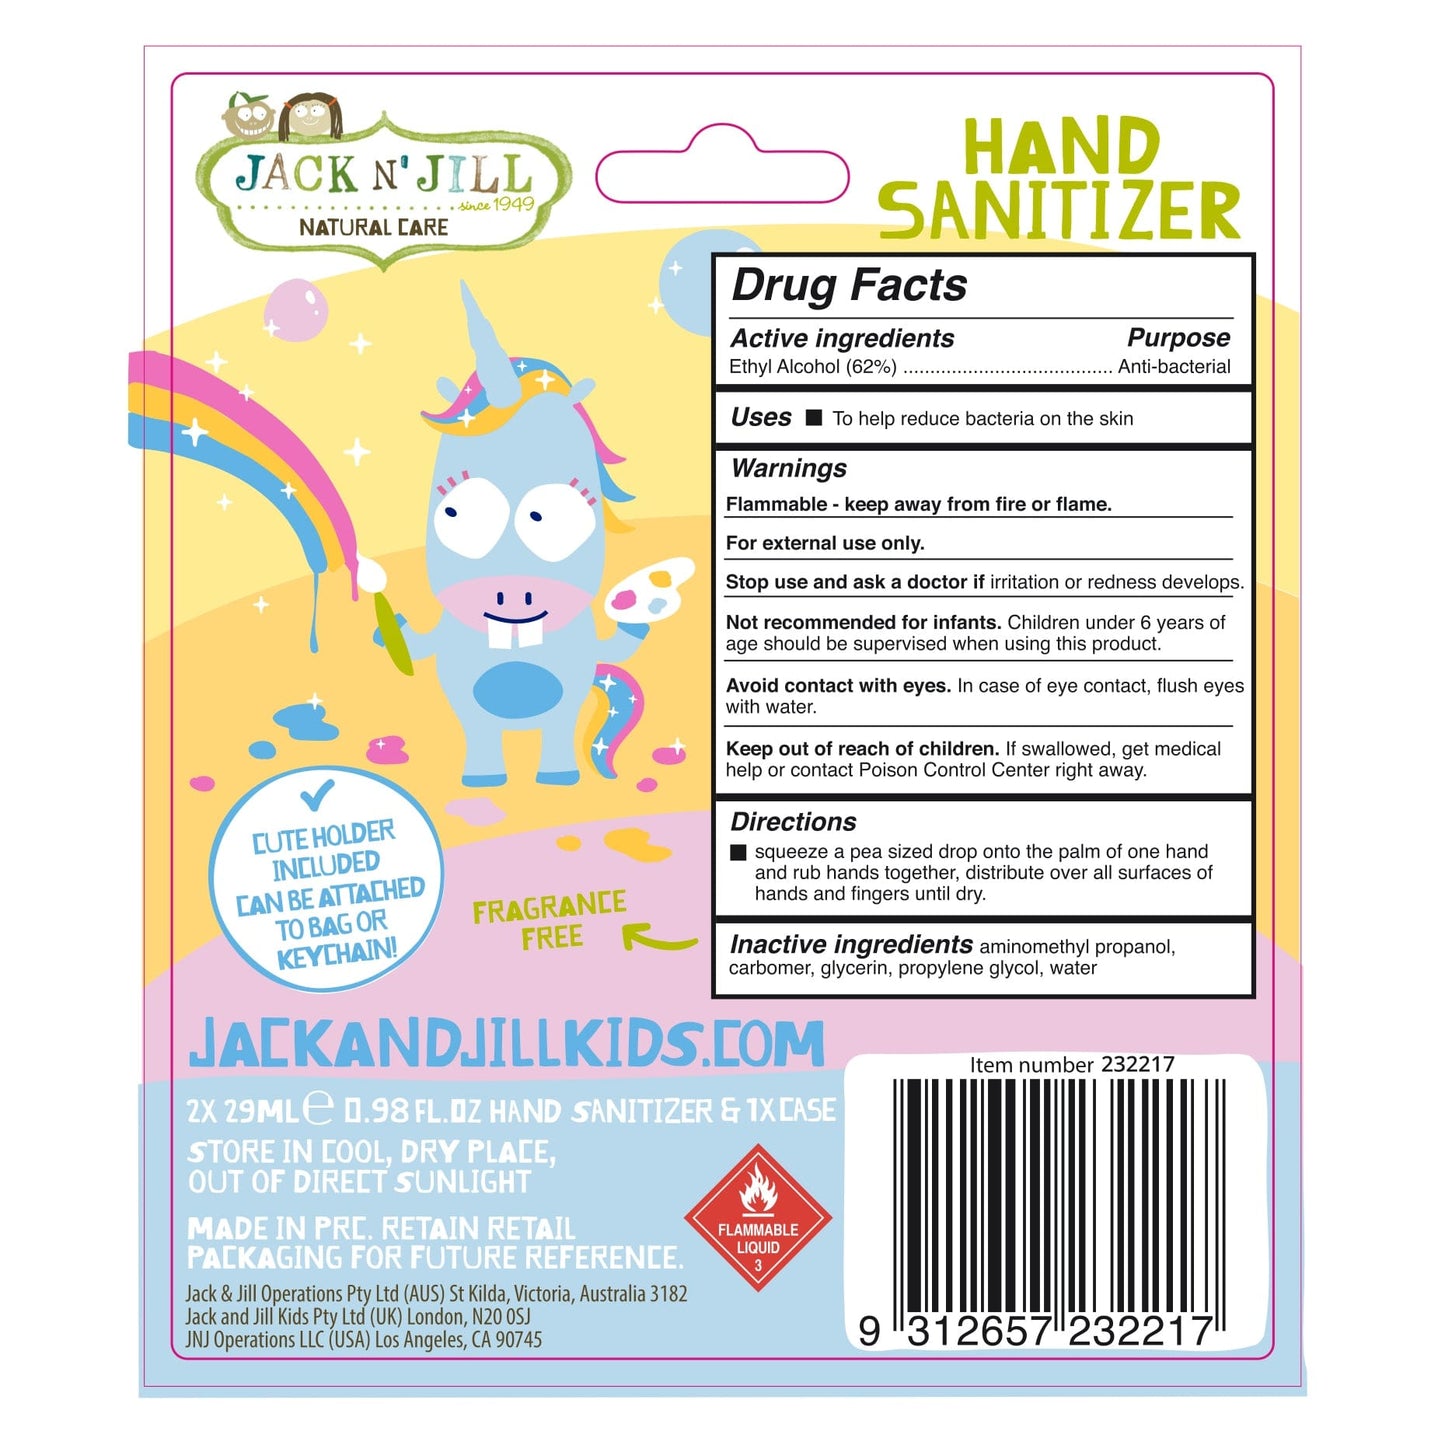 Jack N' Jill Unicorn Hand Sanitiser 2 Pack 29ml Jack N' Jill Unicorn Hand Sanitiser 2 Pack 29ml 